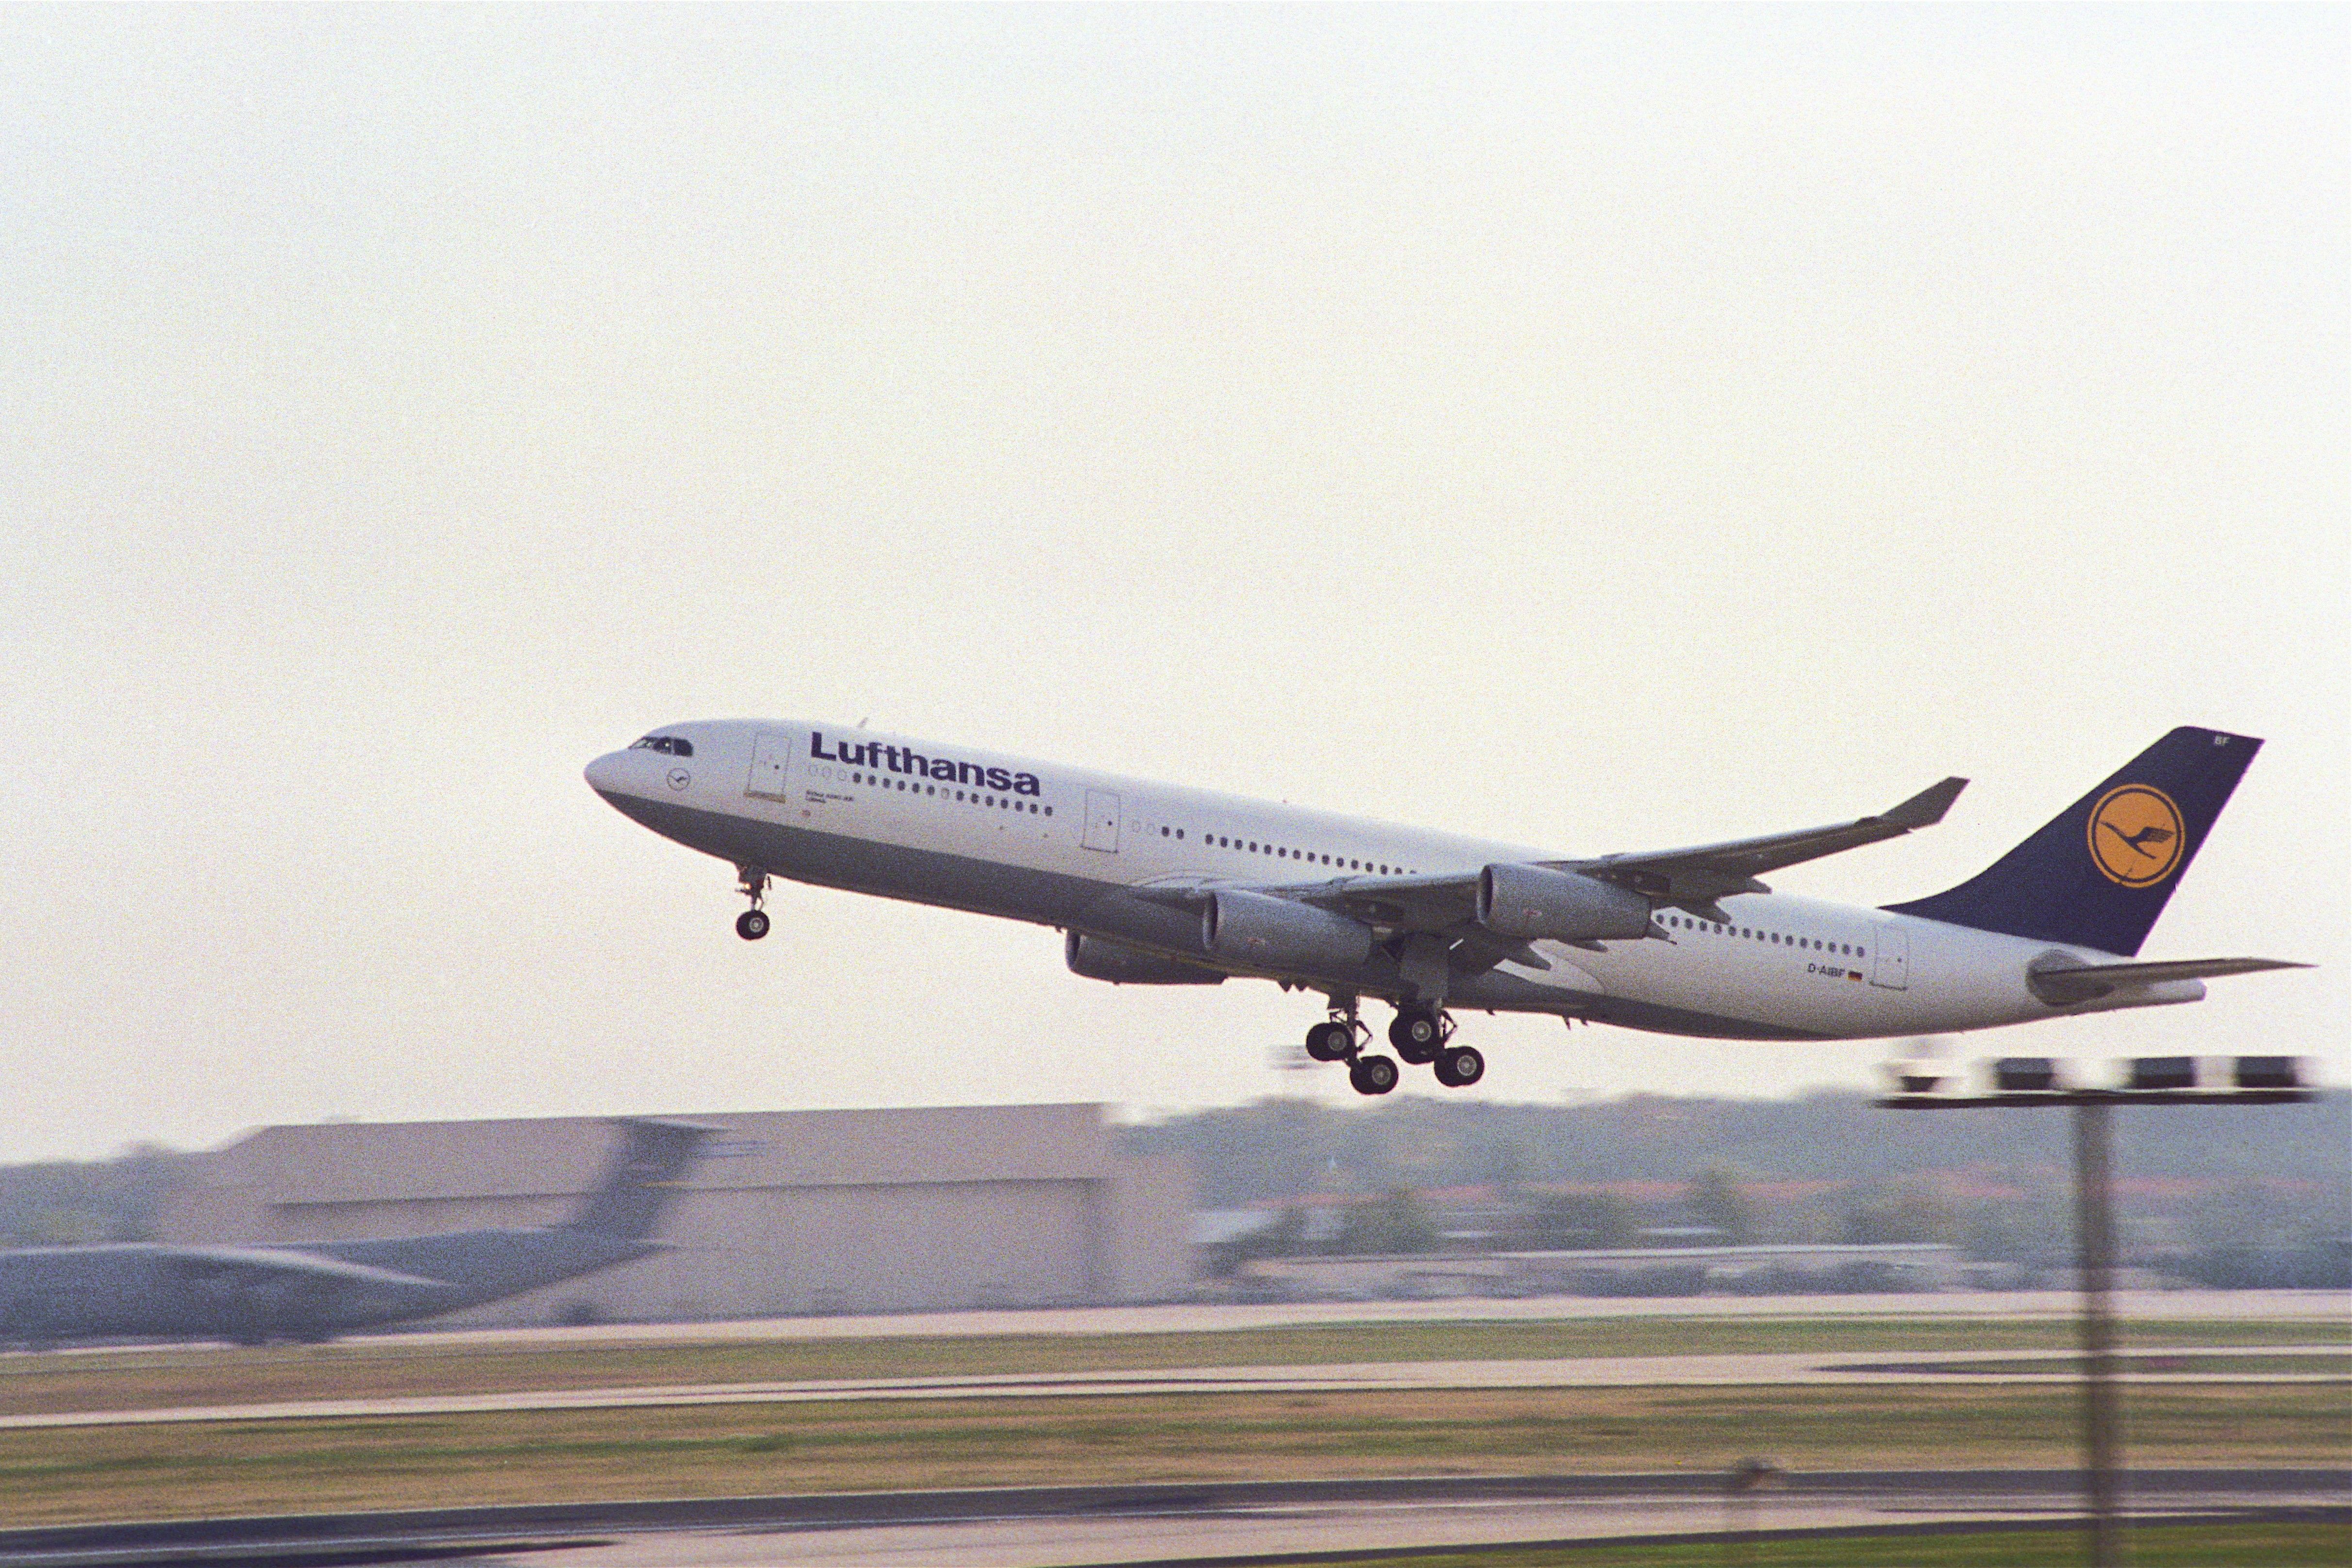 Lufthansa Airbus A340-200